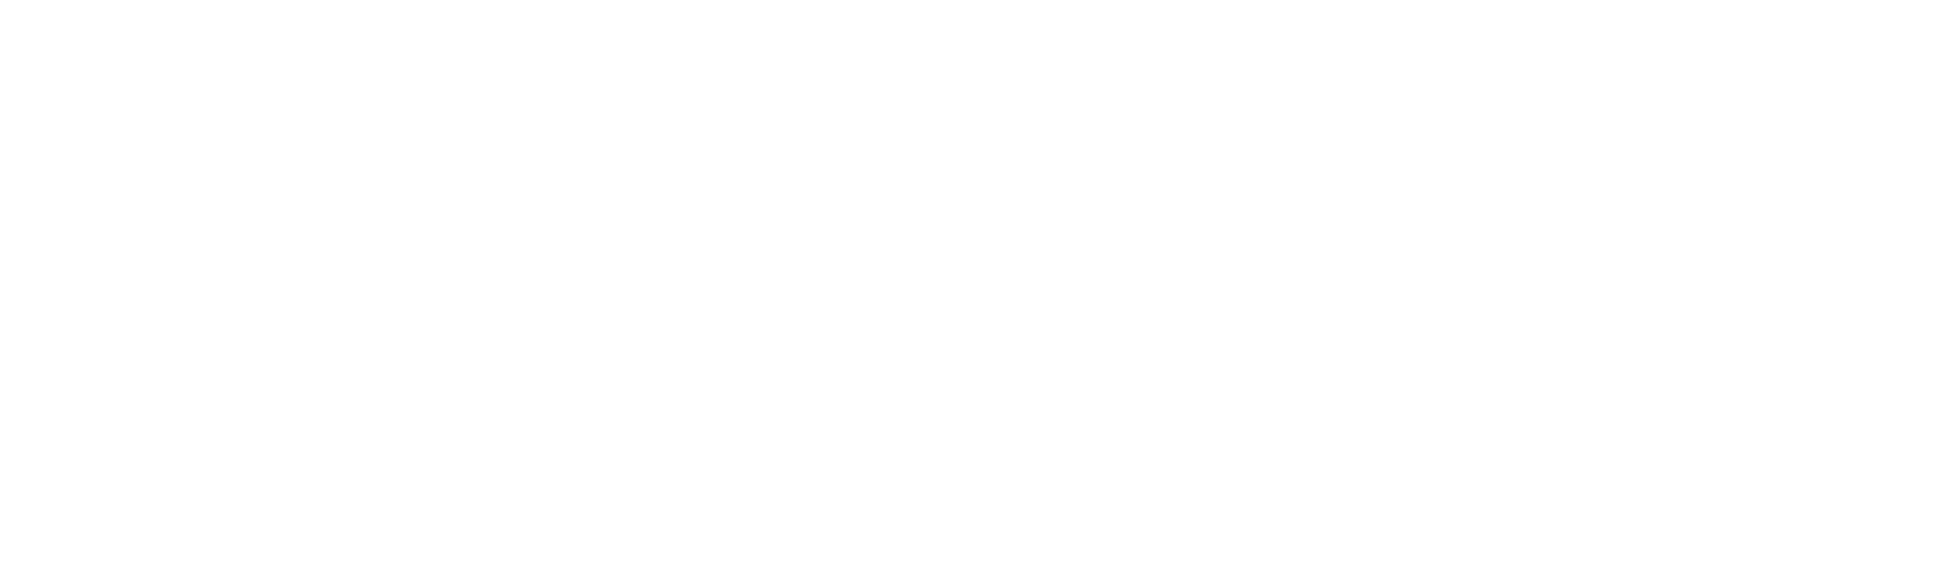 Necon Health Care